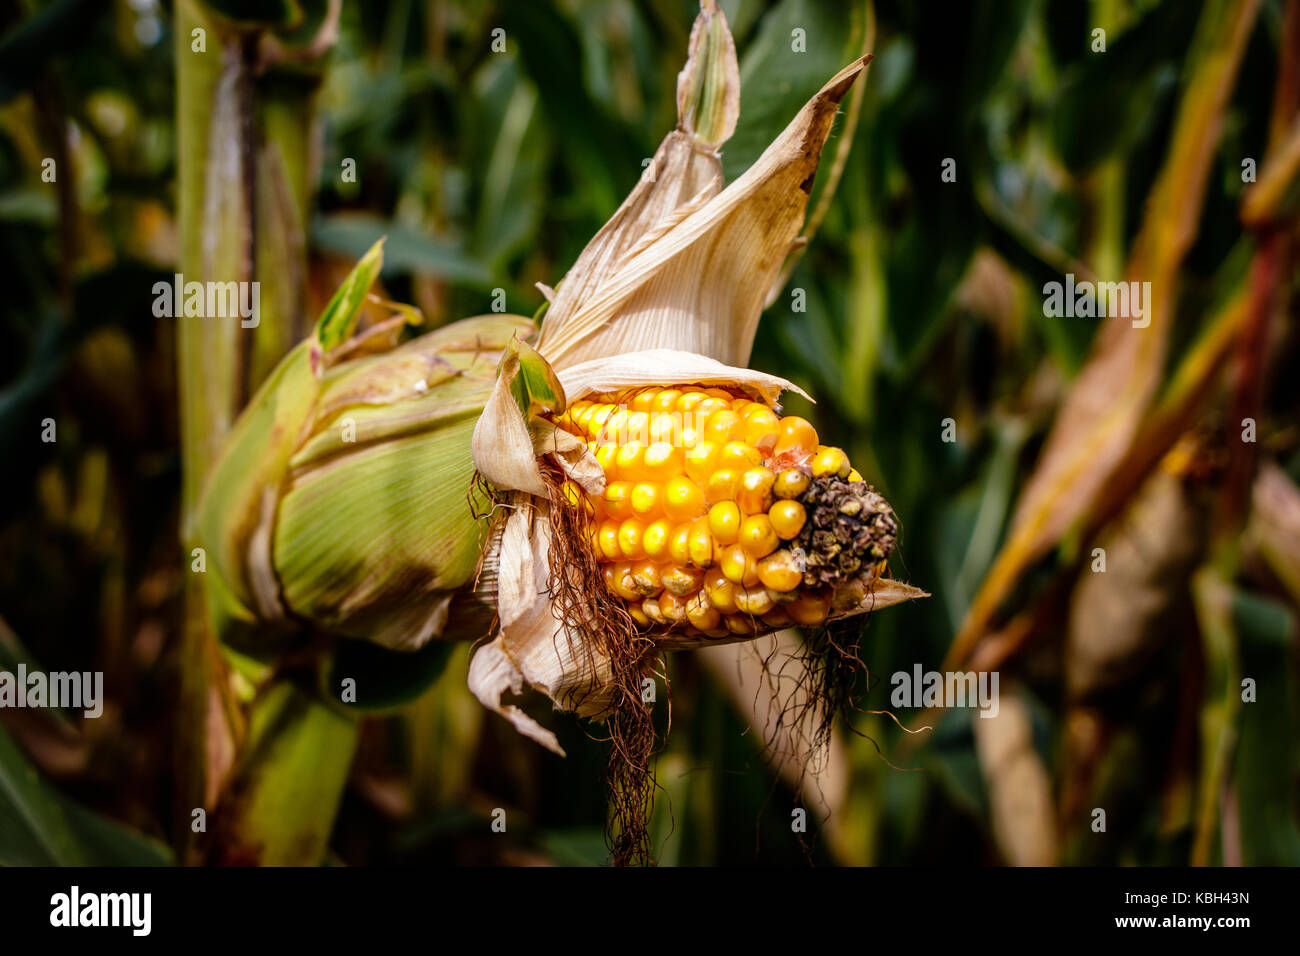 Un labirinto di mais o granturco labirinto è un labirinto tagliare al di fuori di un campo di mais. Il primo labirinto di mais è stata in annville, Pennsylvania. dedali di grano sono diventati popolari mete Foto Stock